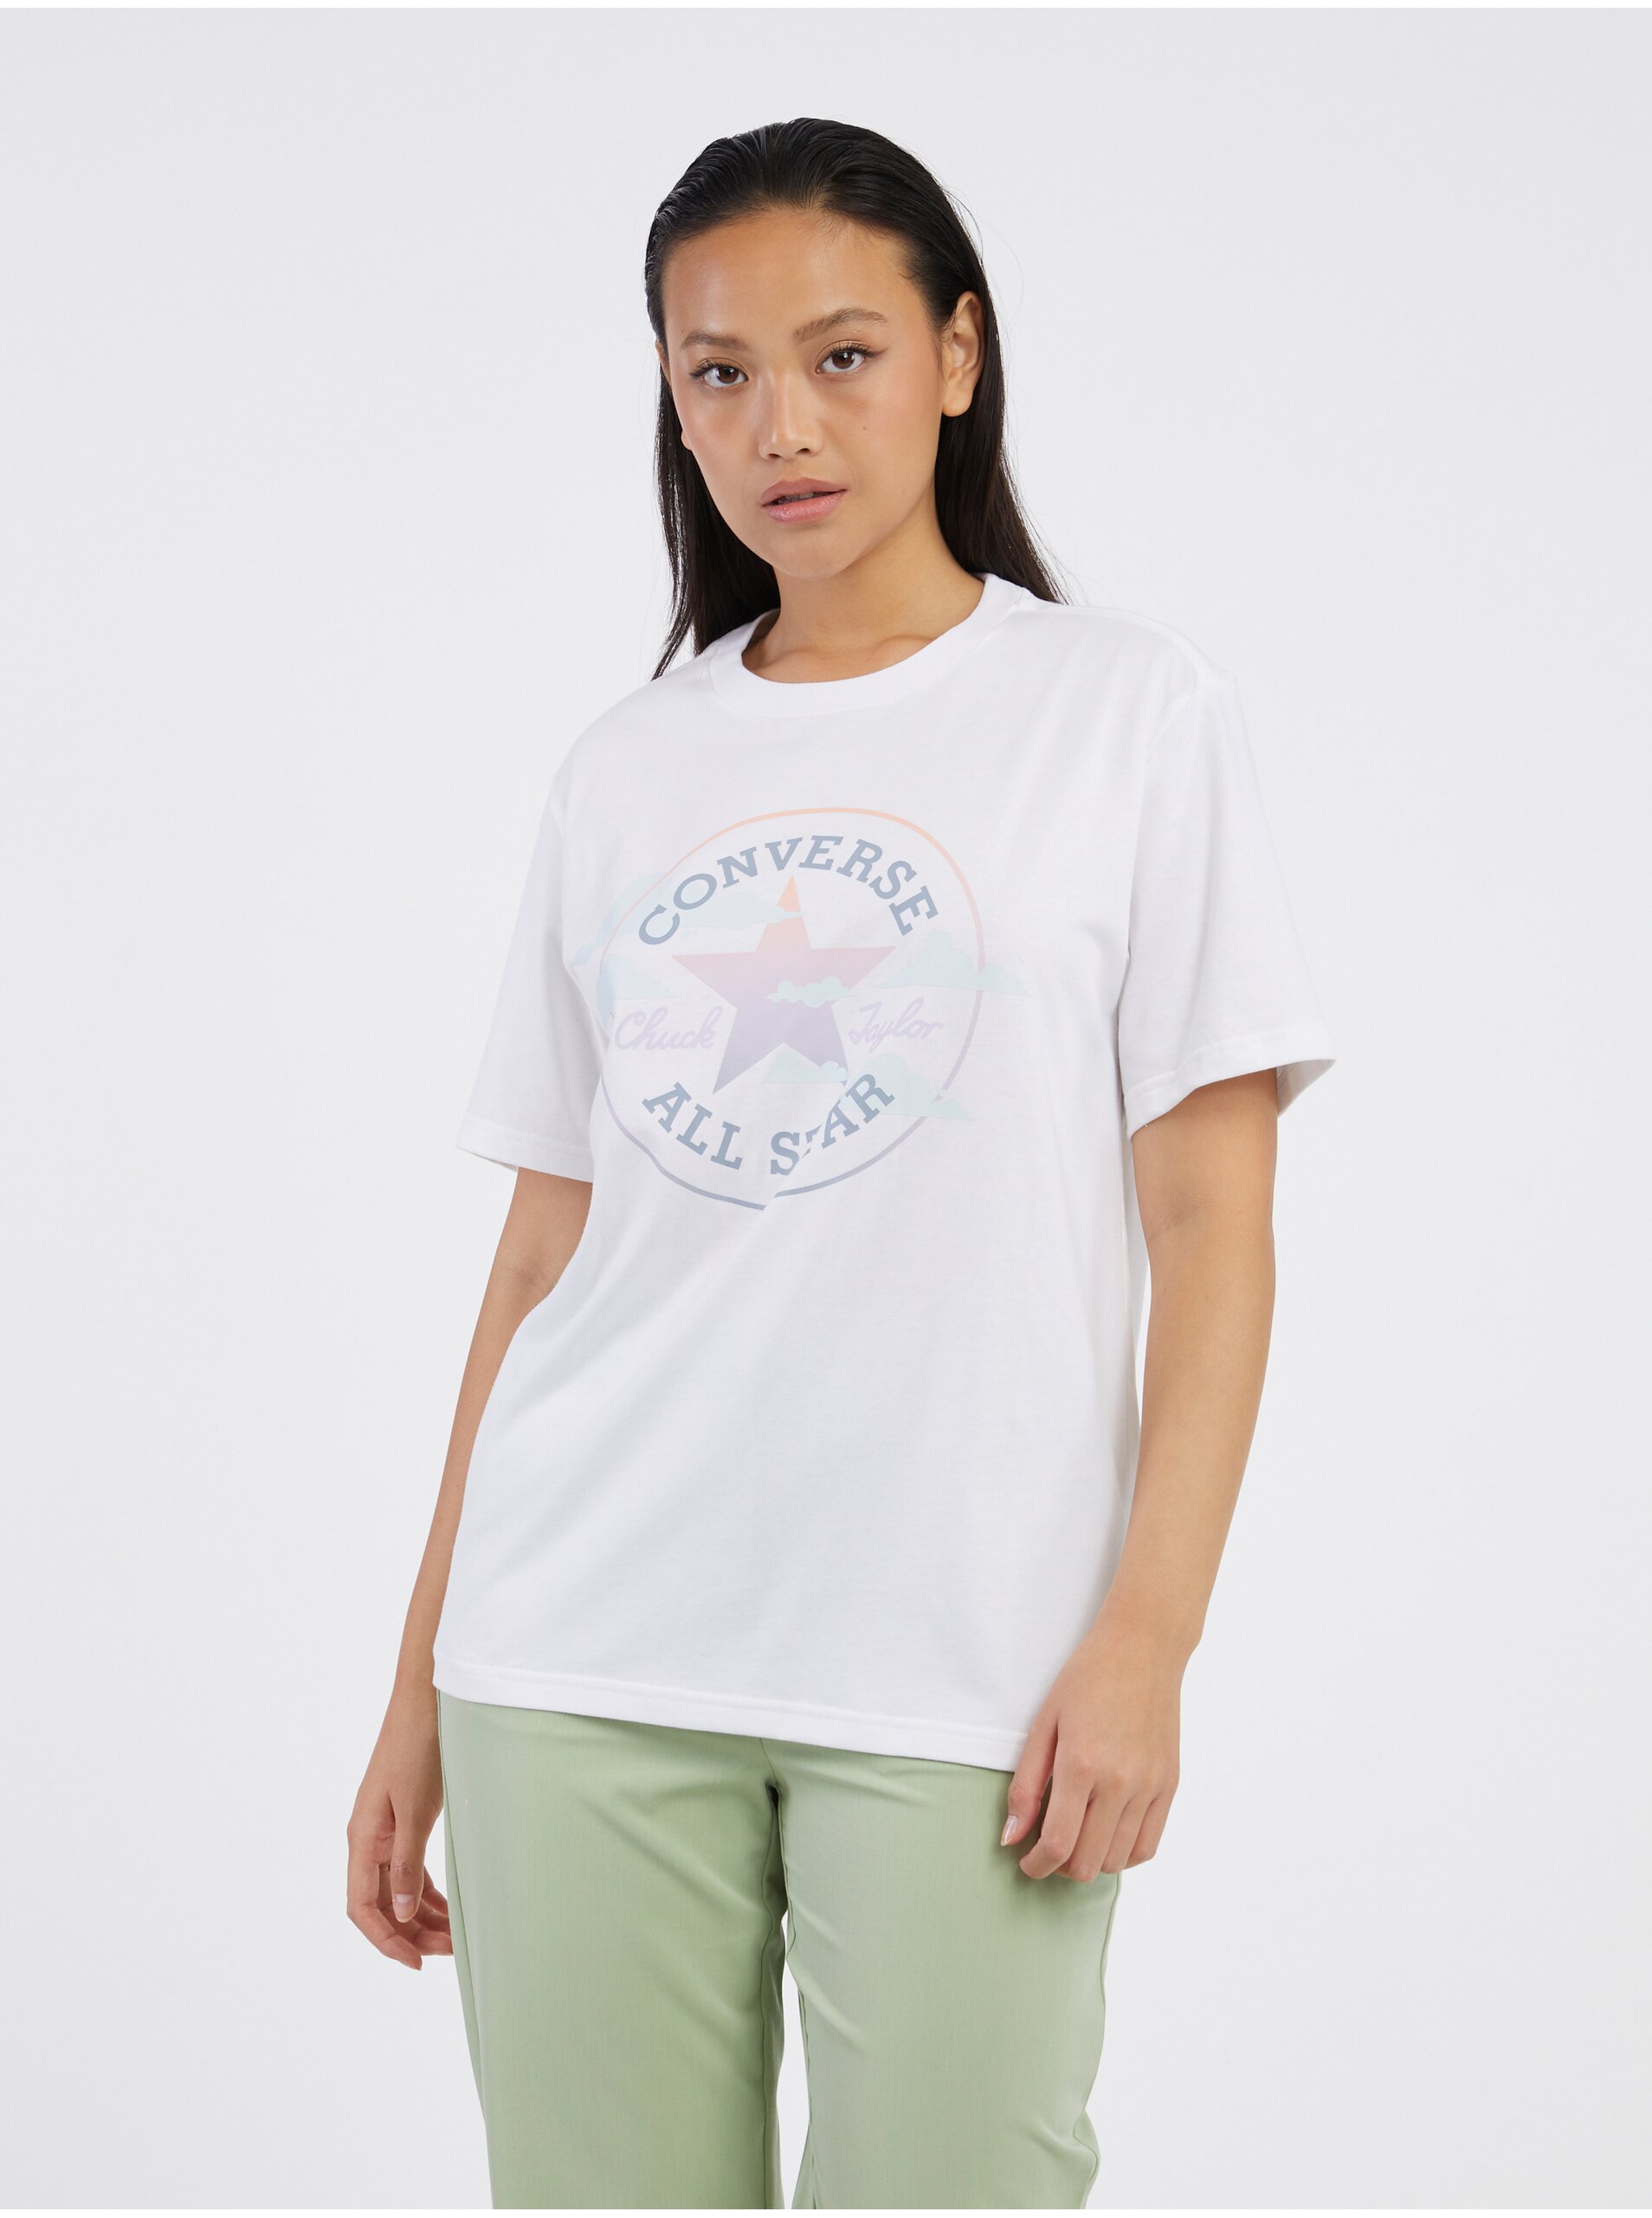 White Women's T-Shirt Converse - Women